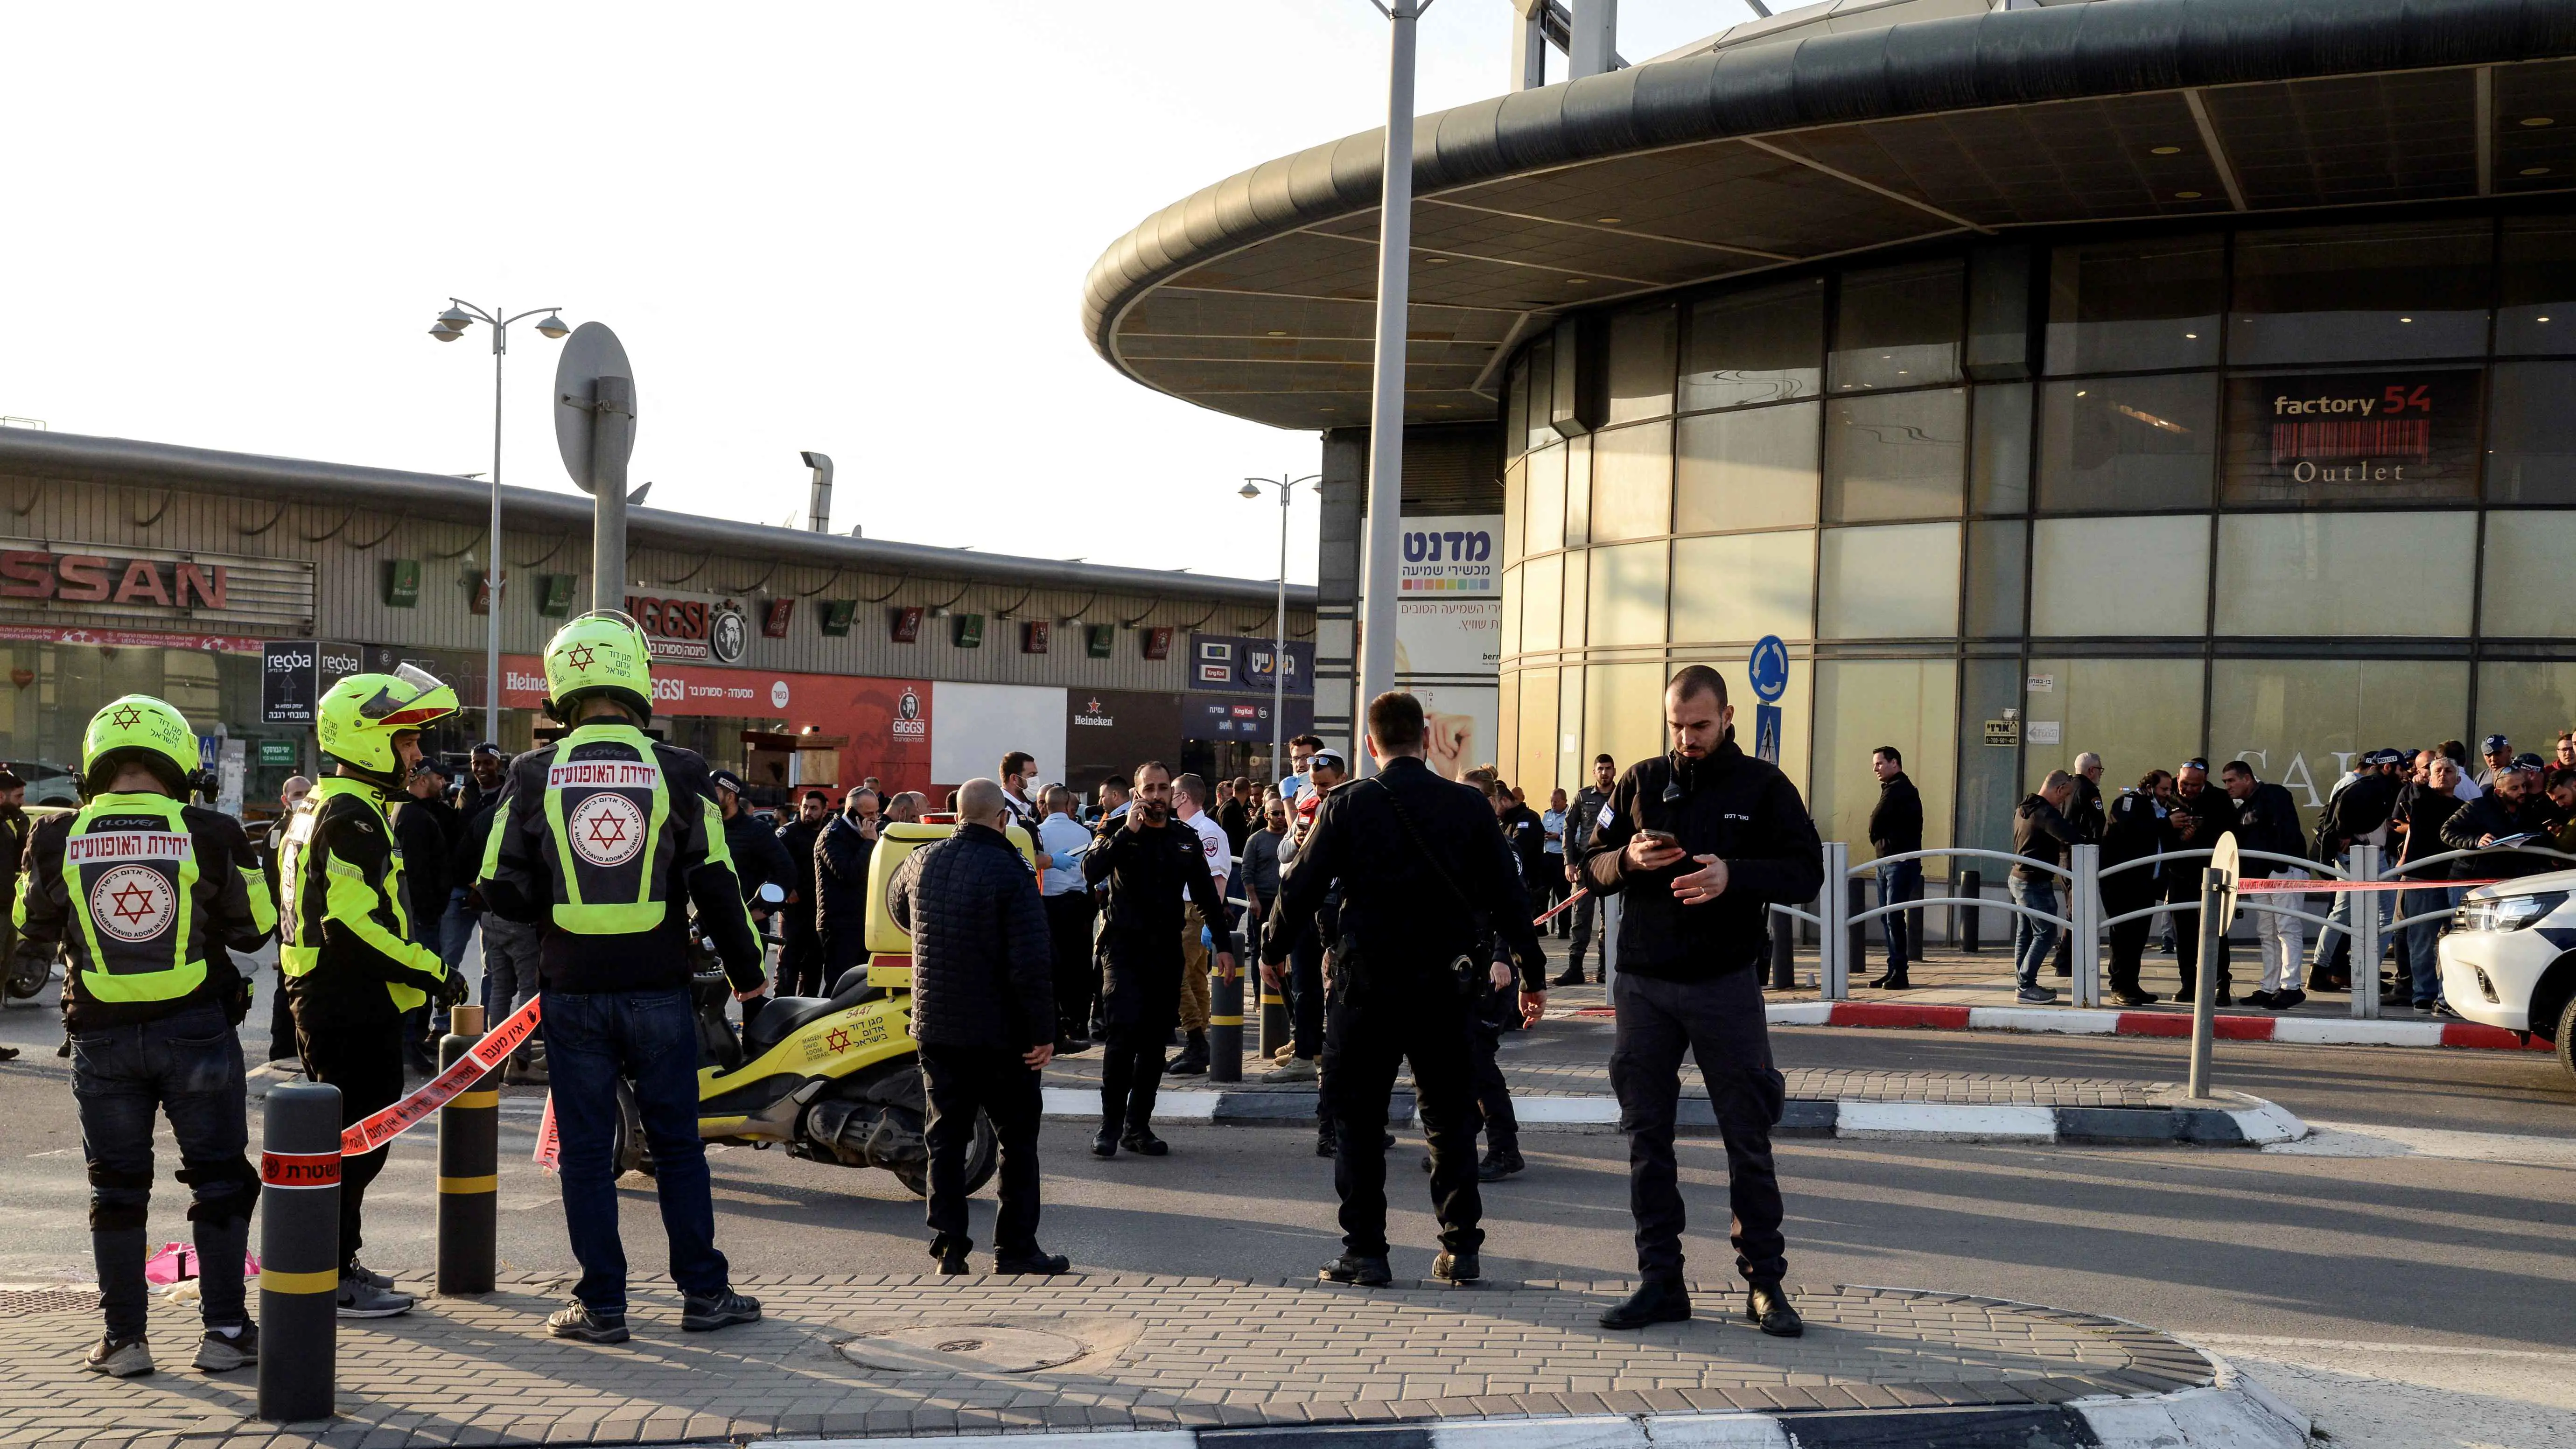 إصابة جنديين إسرائيليين إثر عملية طعن في مركز تسوق (فيديو)